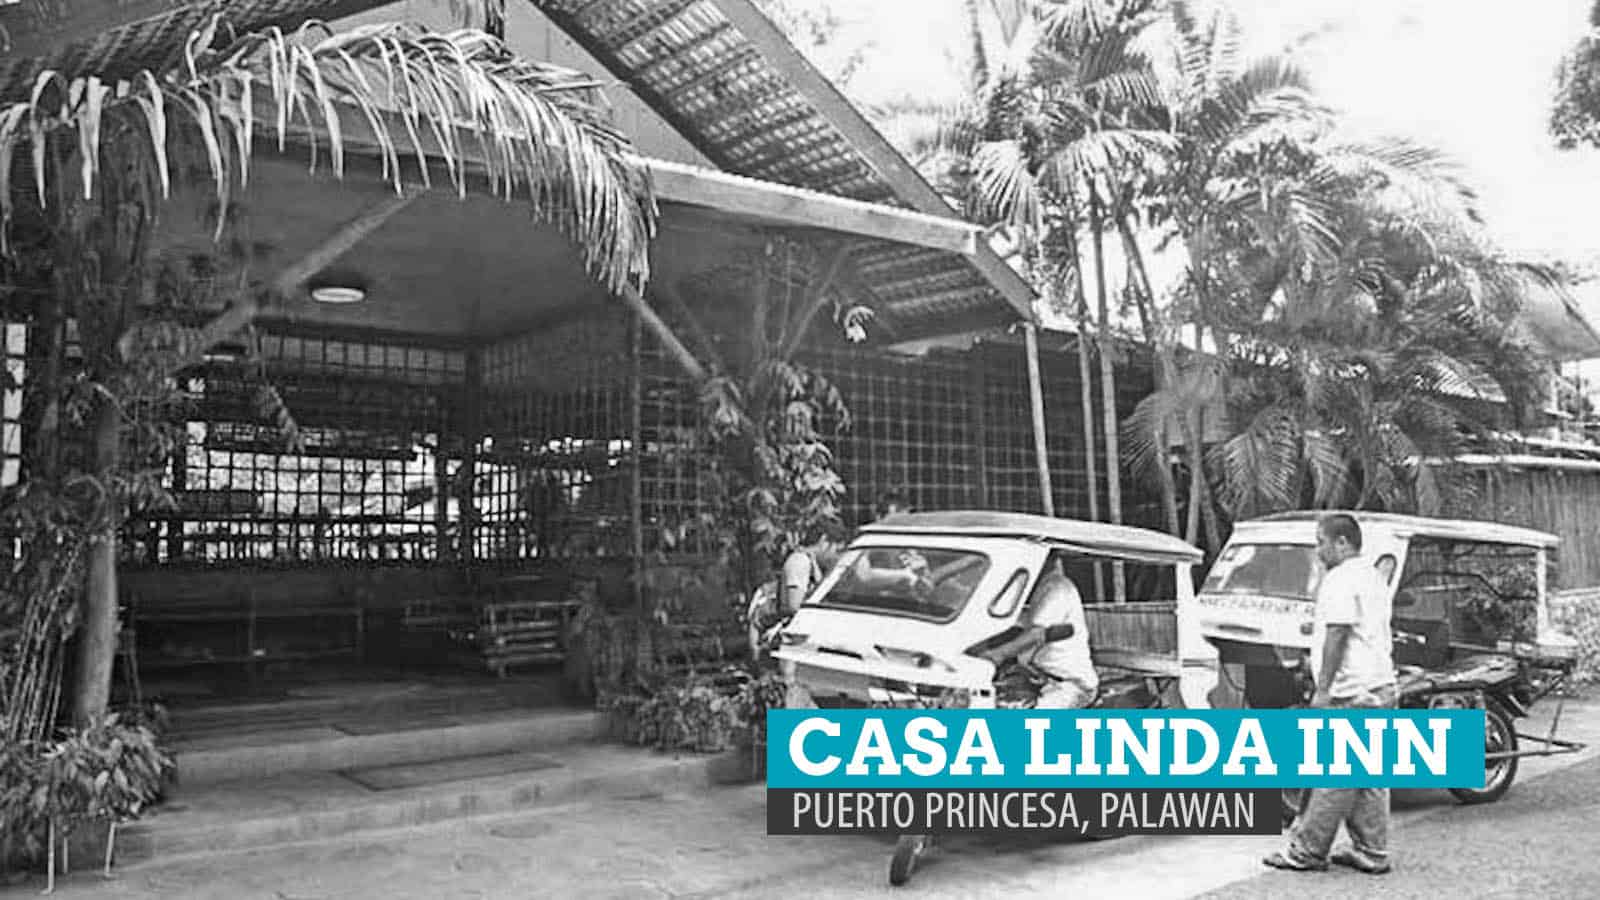 卡萨琳达Inn:在波多黎各普林塞萨，巴拉望，菲律宾呆在哪里